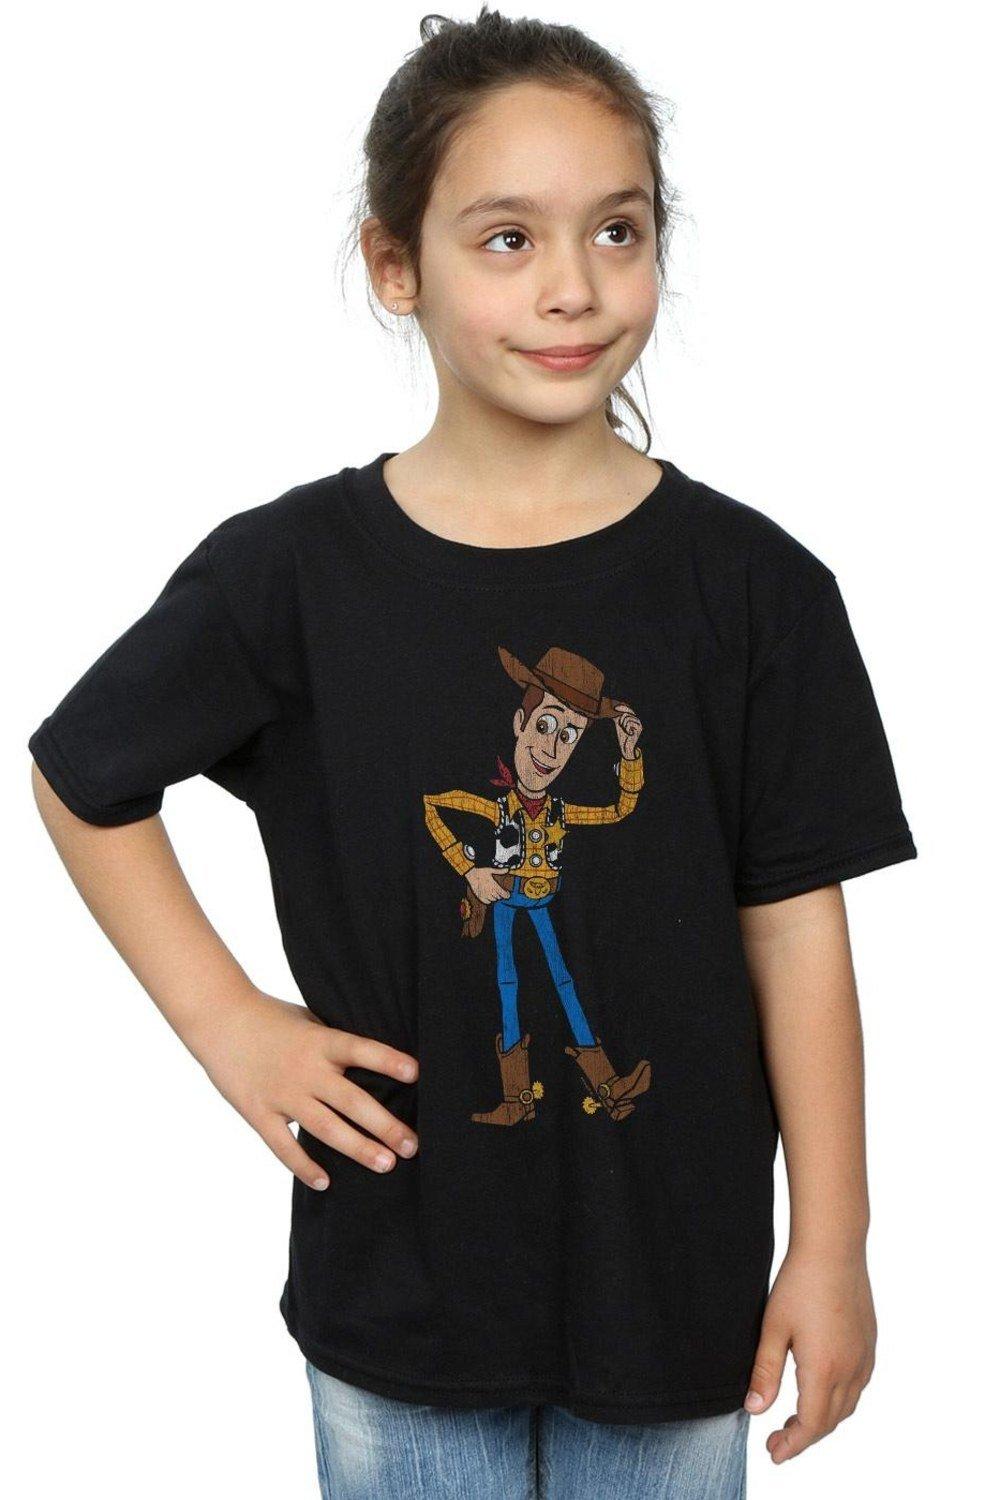 Хлопковая футболка «История игрушек 4: Шериф Вуди» Disney, черный пазлы для малышей история игрушек шериф вуди и мистер картофель детская логика